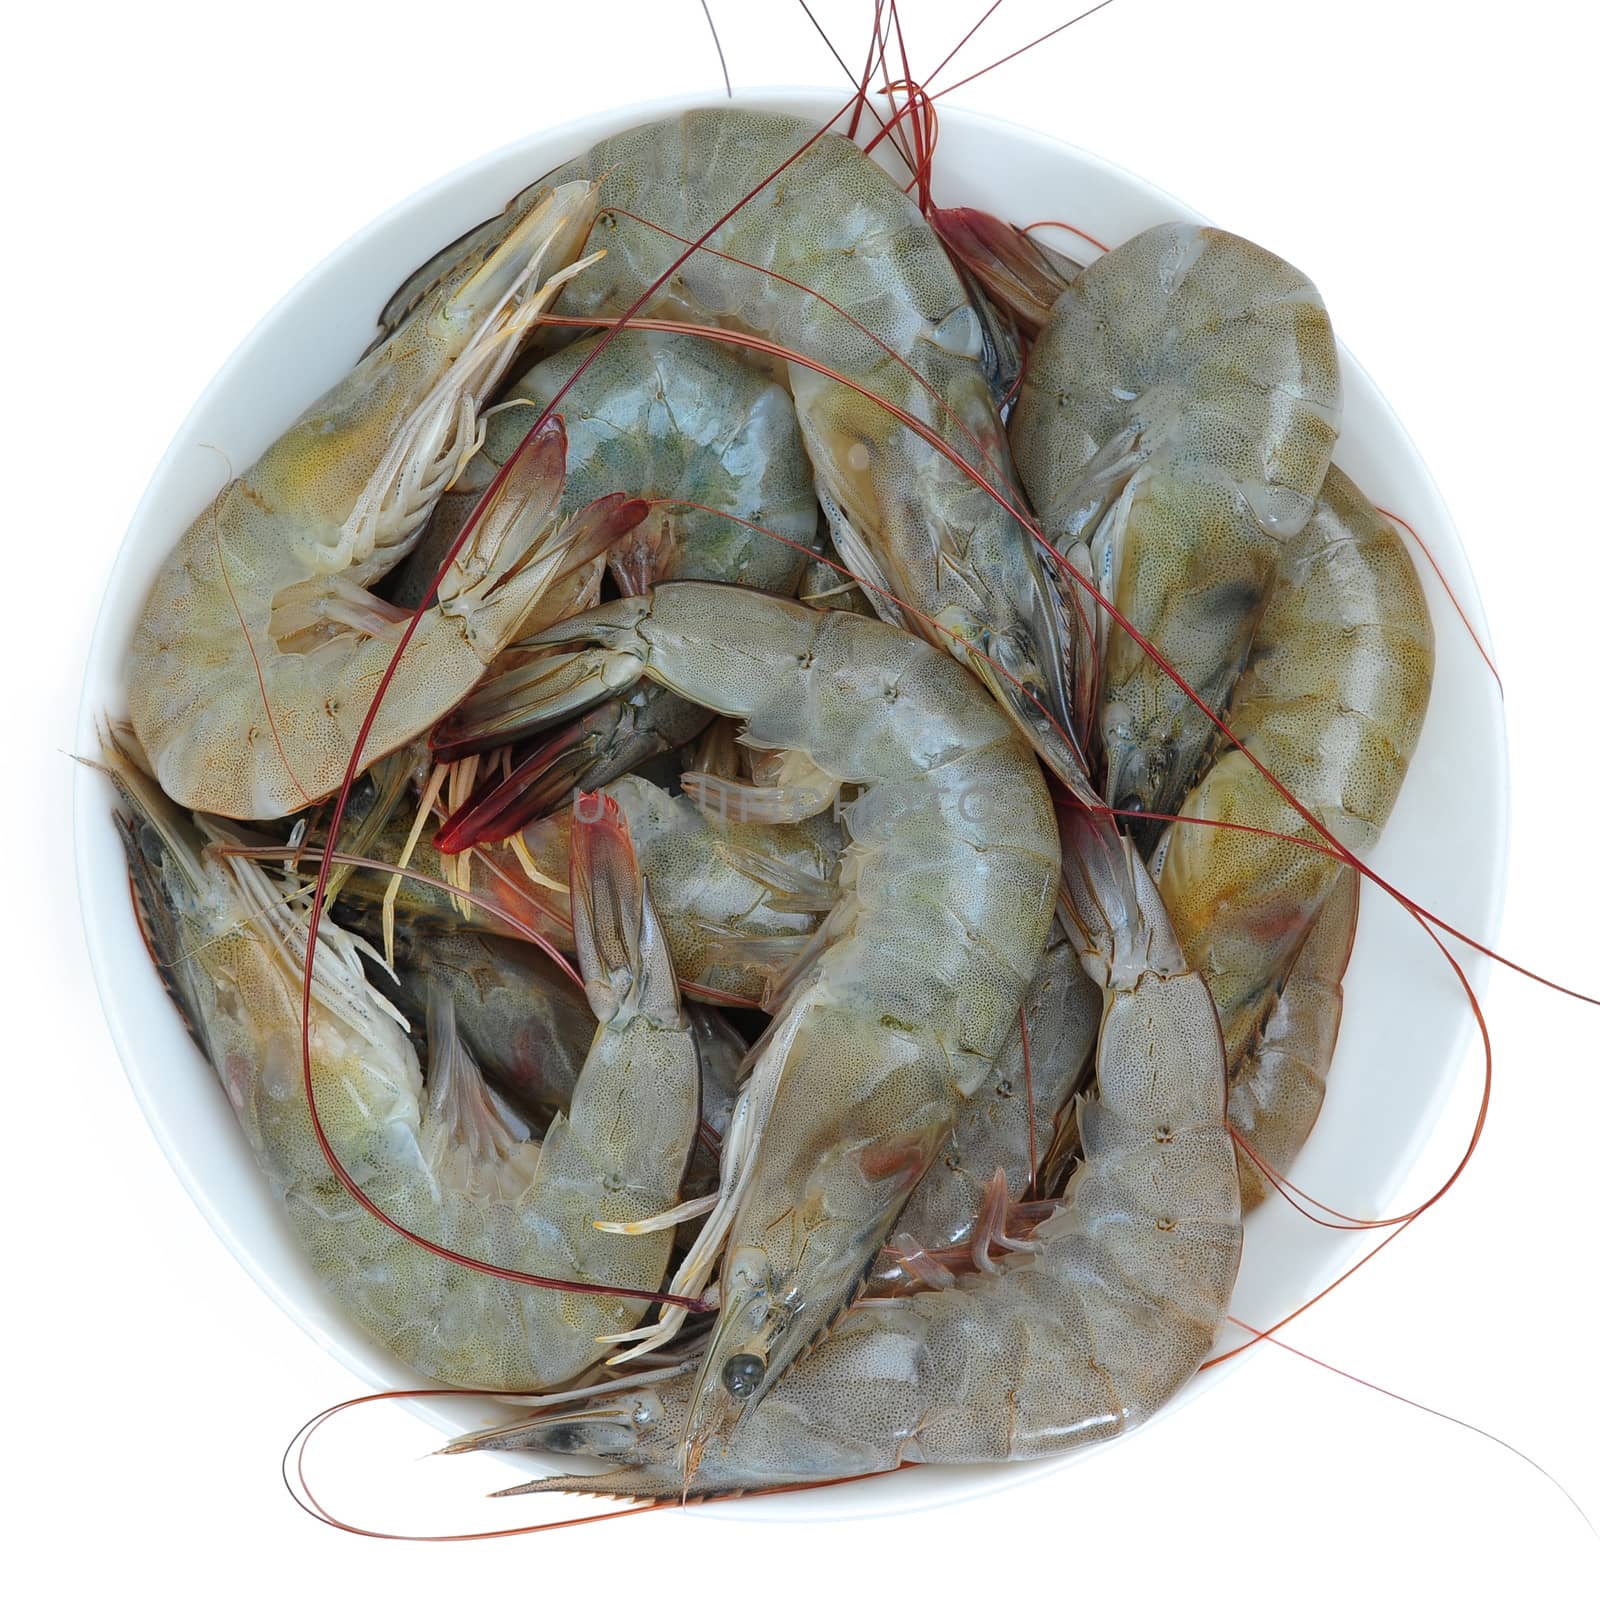 prawns, shrimps by antpkr